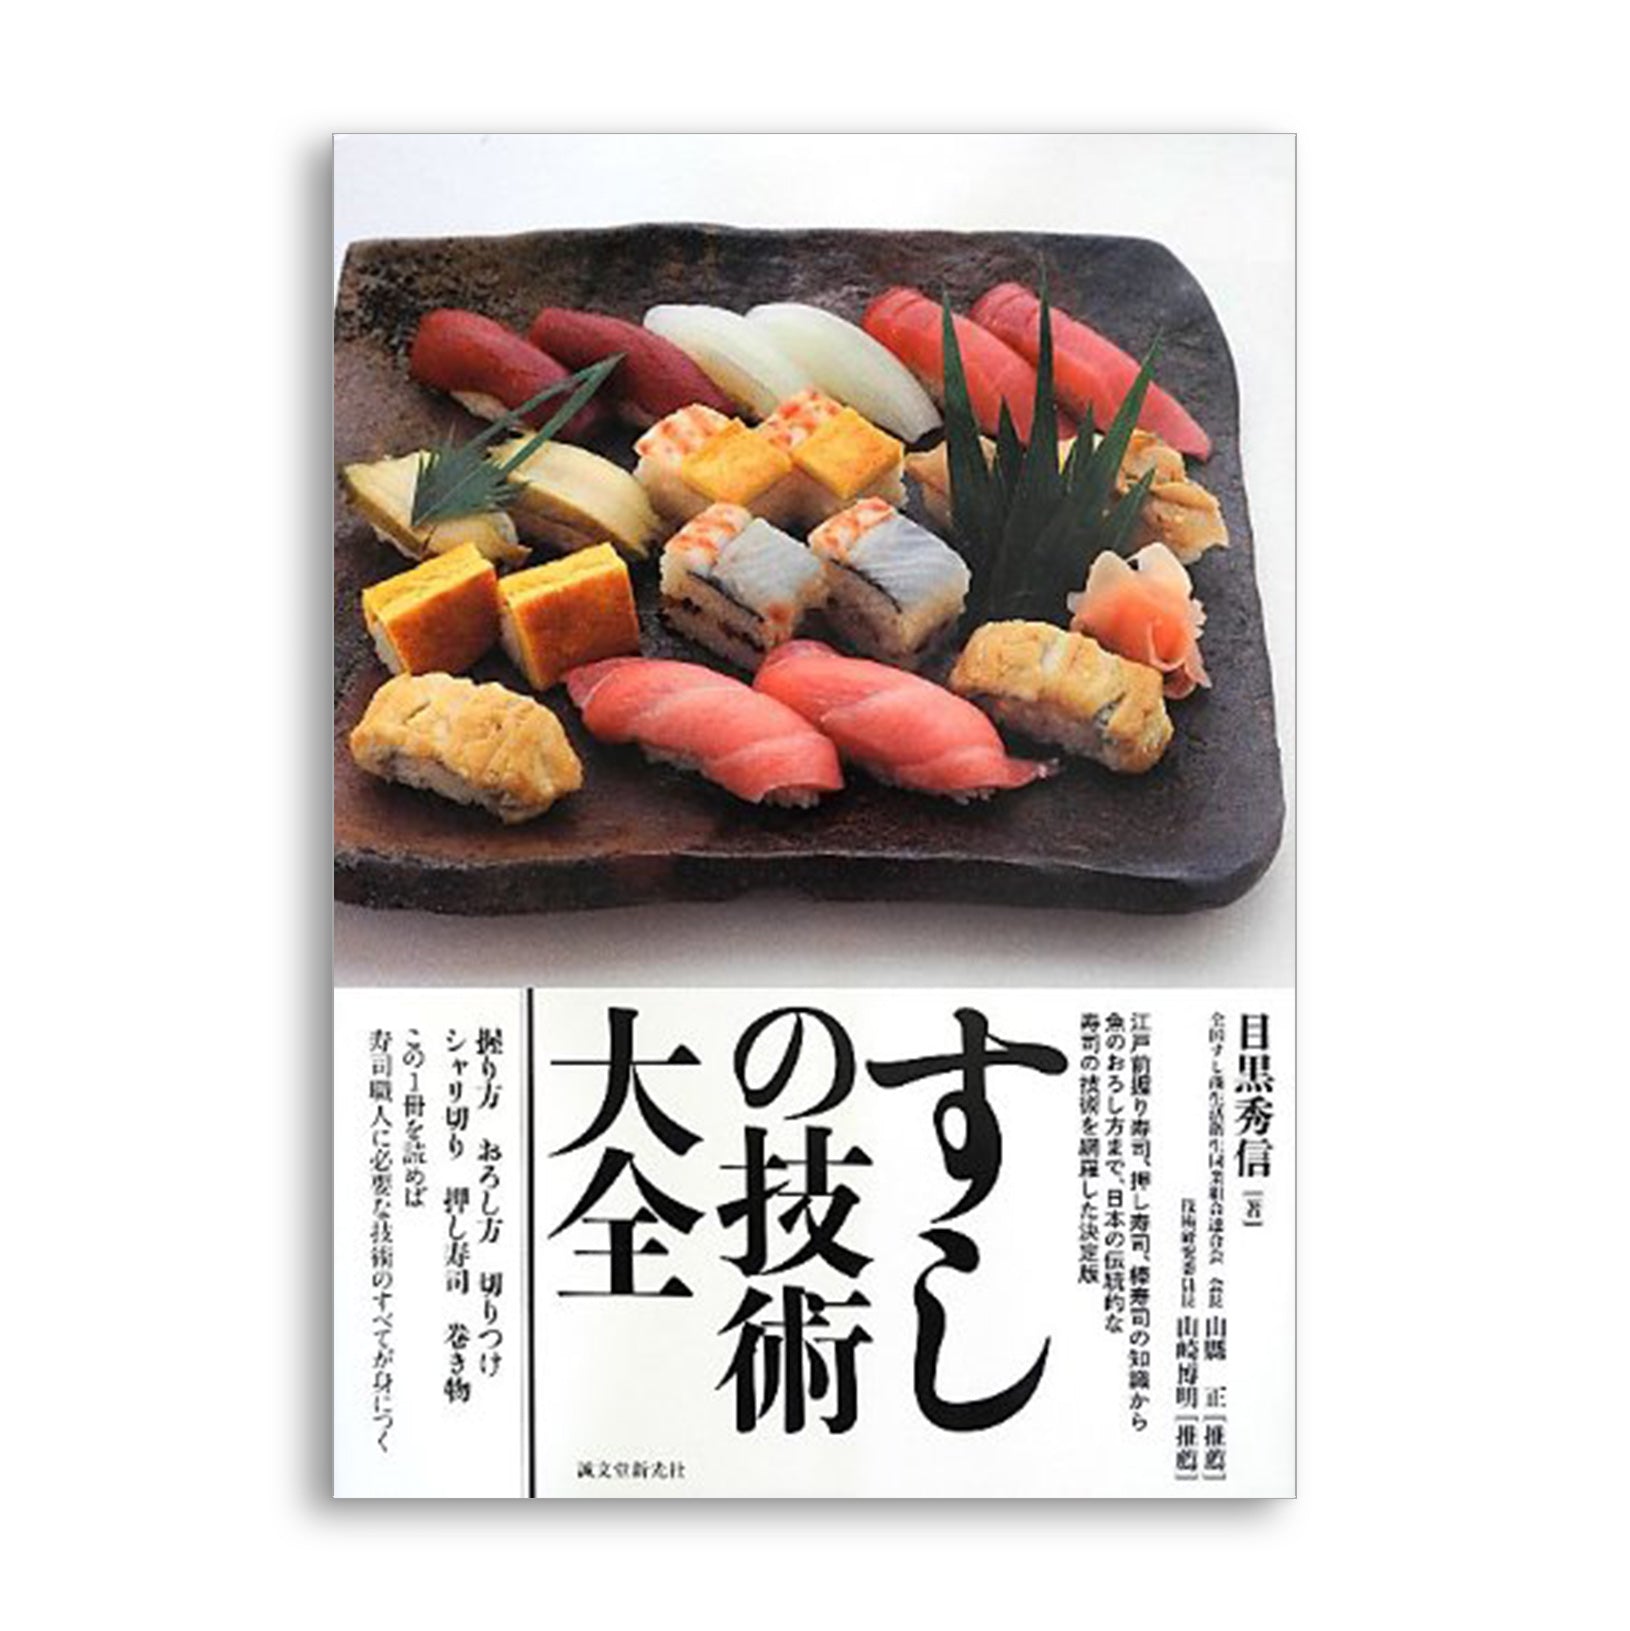 すし技術専科 全5巻 お寿司の専門用技法書 C - 語学・辞書・学習参考書